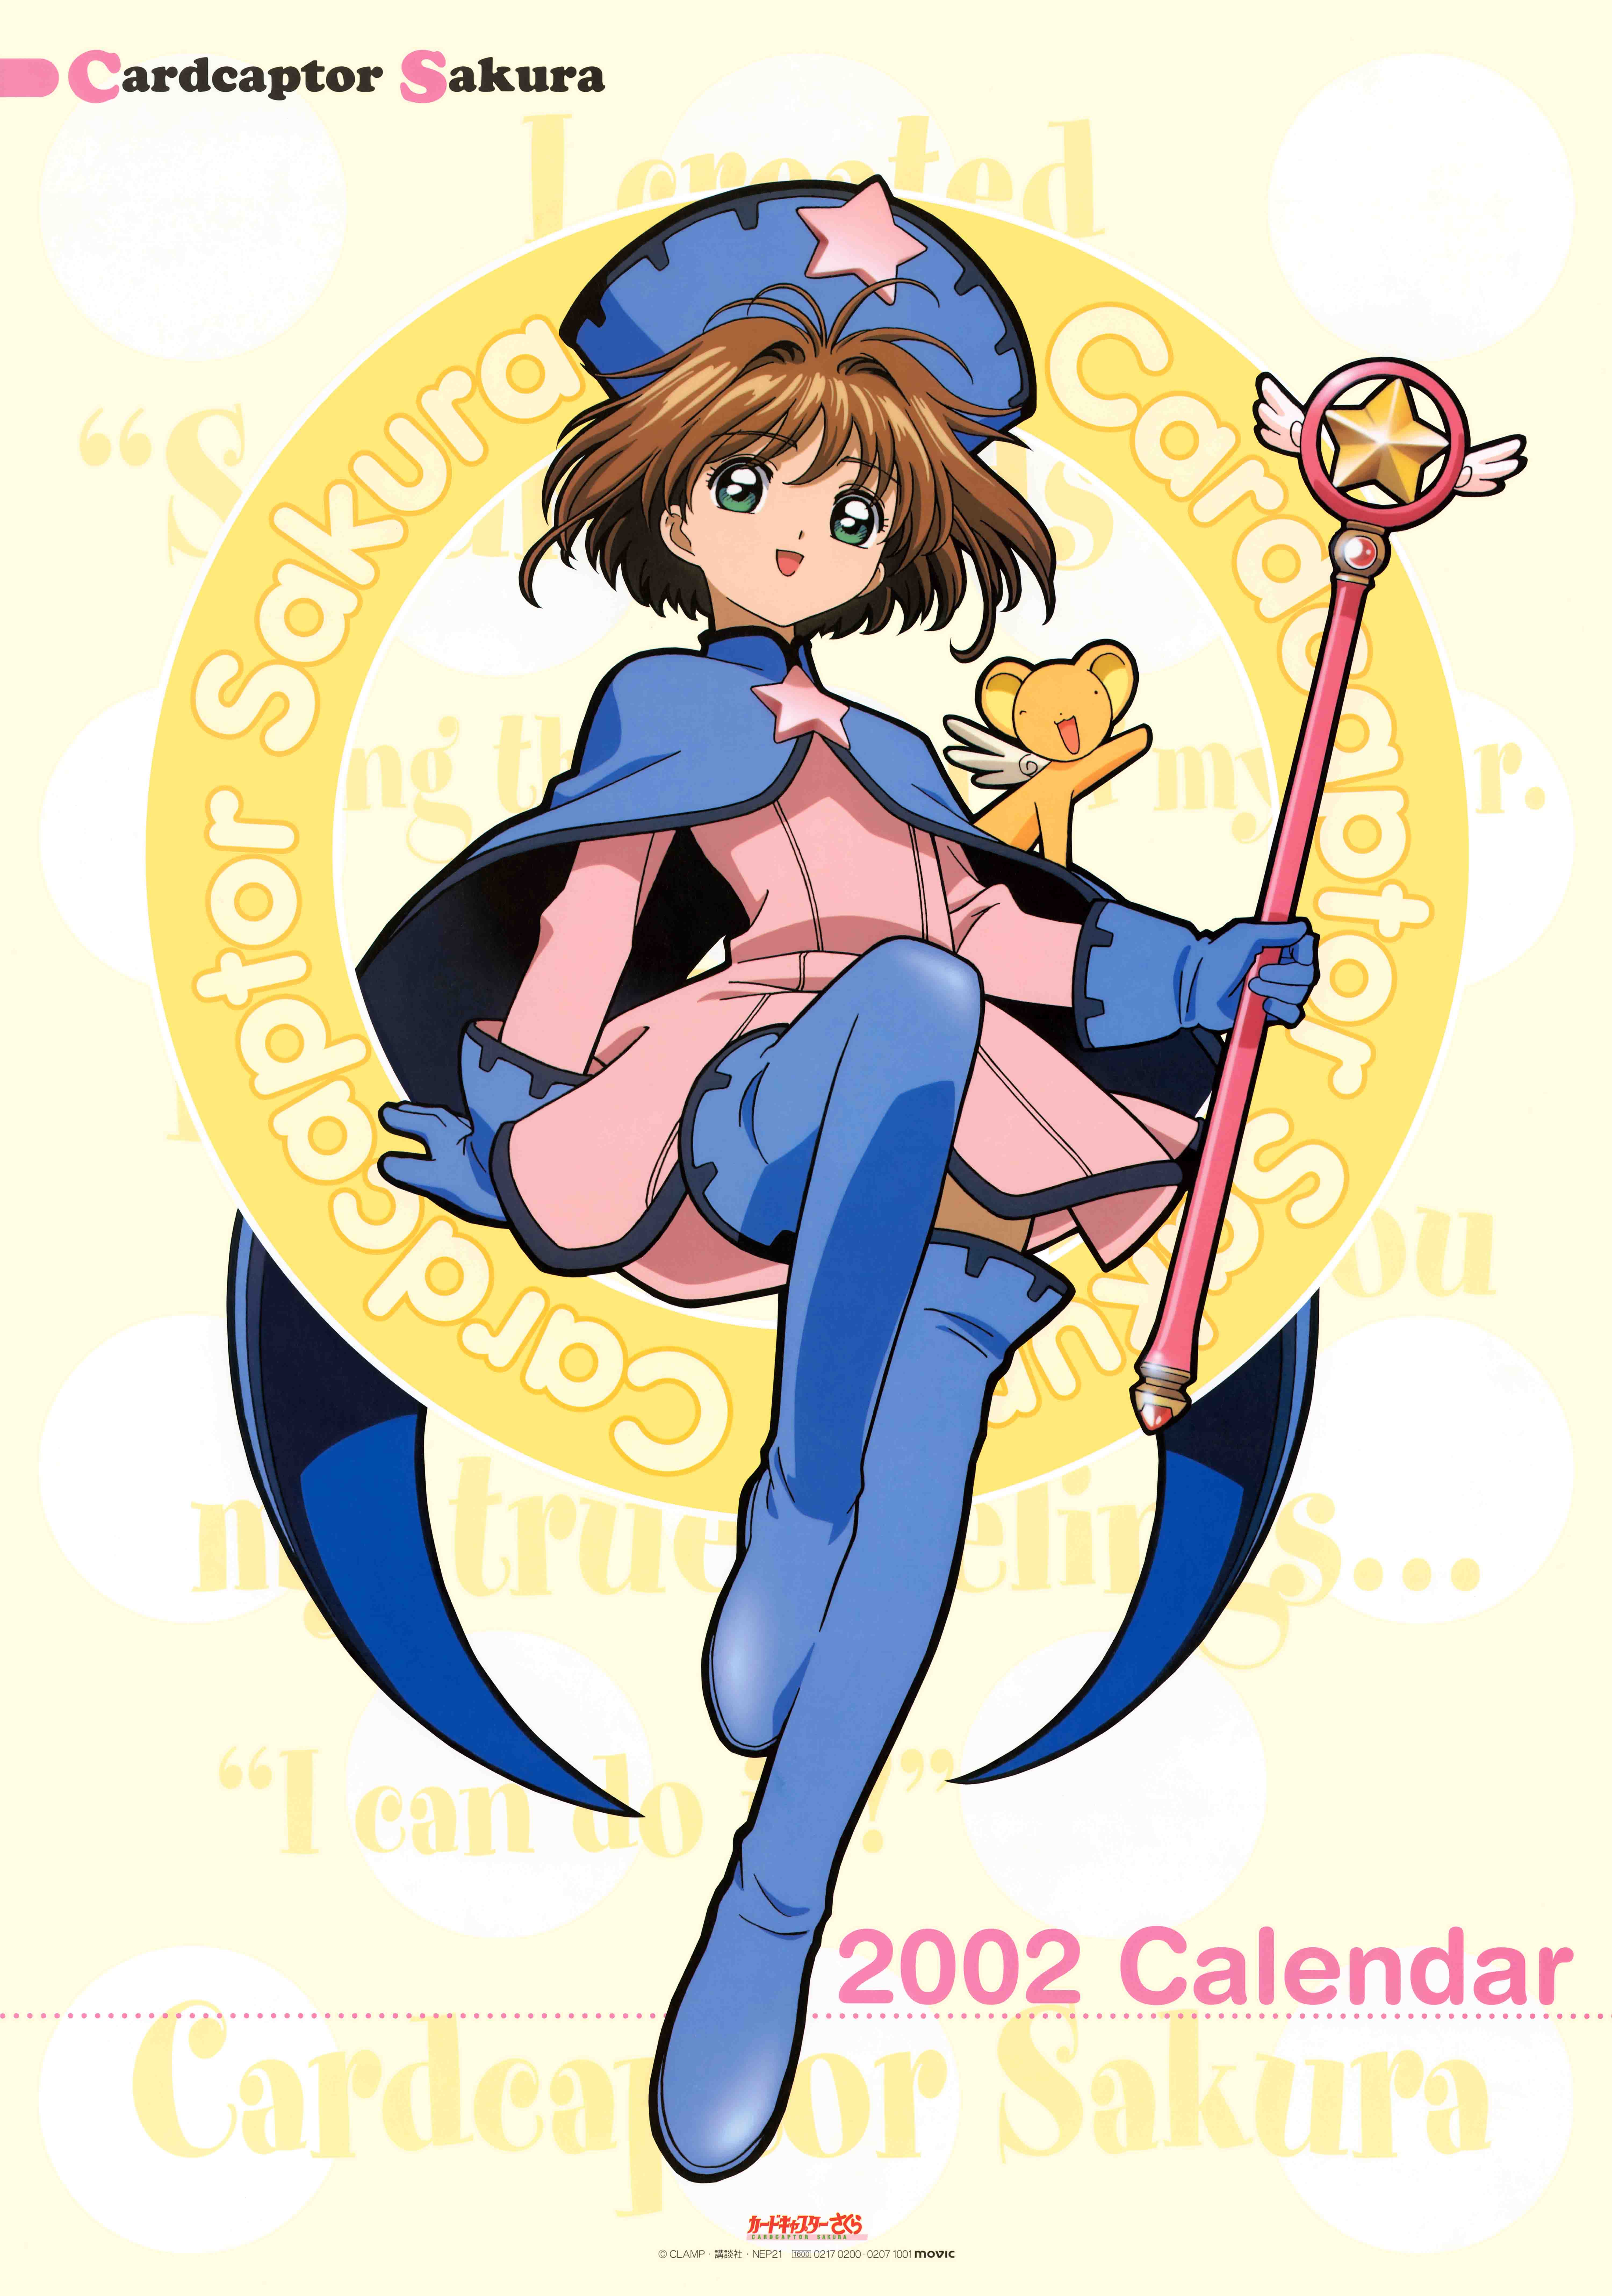 Календарь сакура. Cardcaptor Sakura fun. Artist Calendar Sakura. Календари с девушками с 2002.